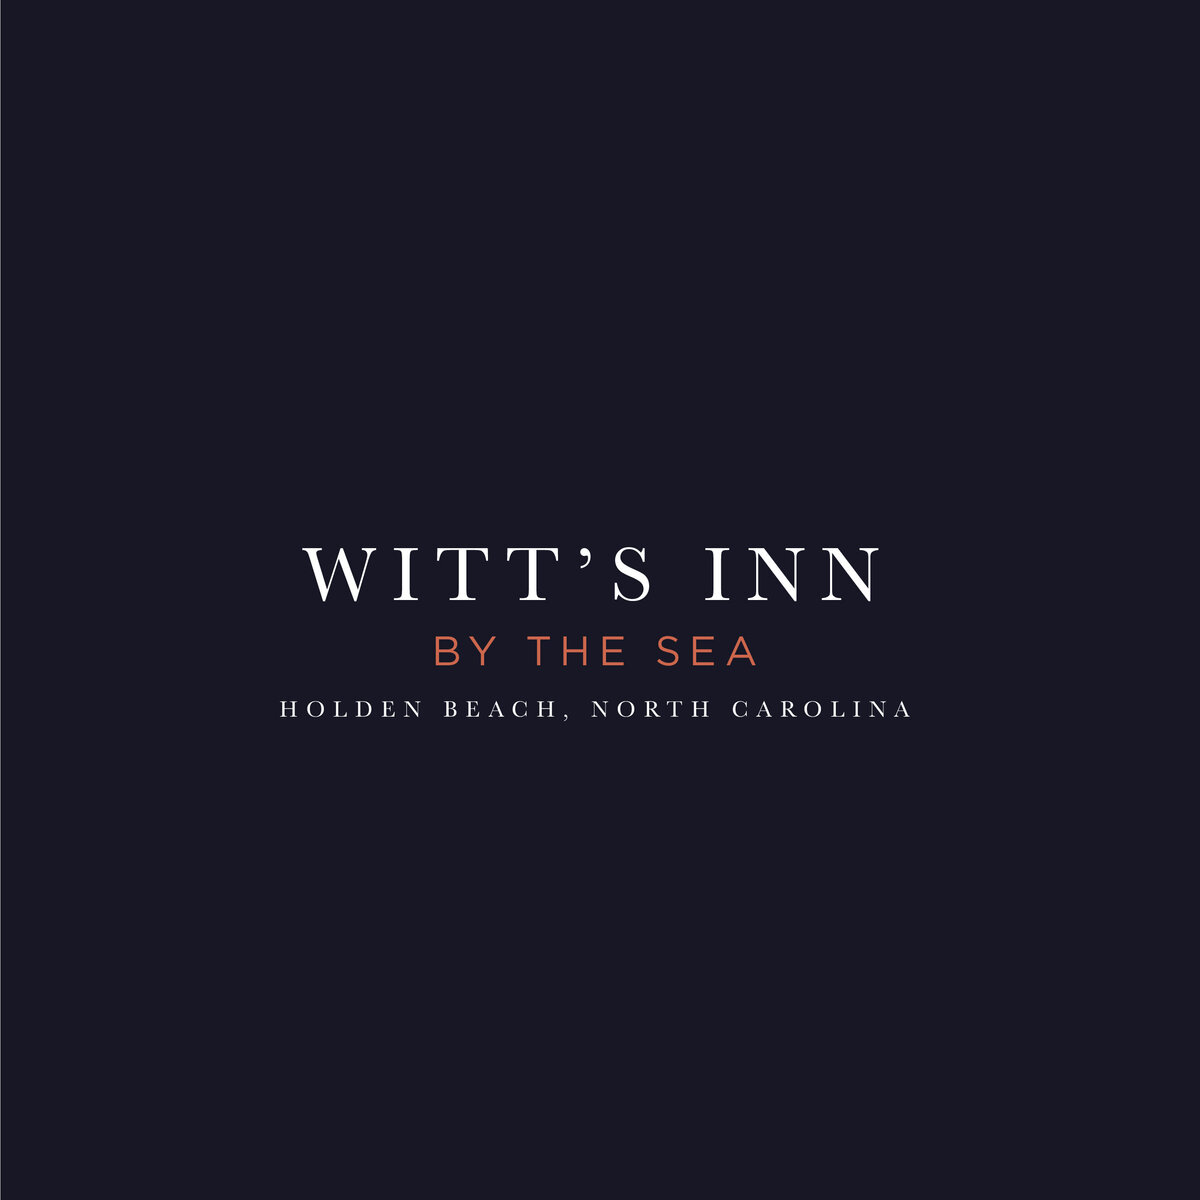 Witts-Inn-Custom-Branding-Website-Abby-Powell-Designs-05